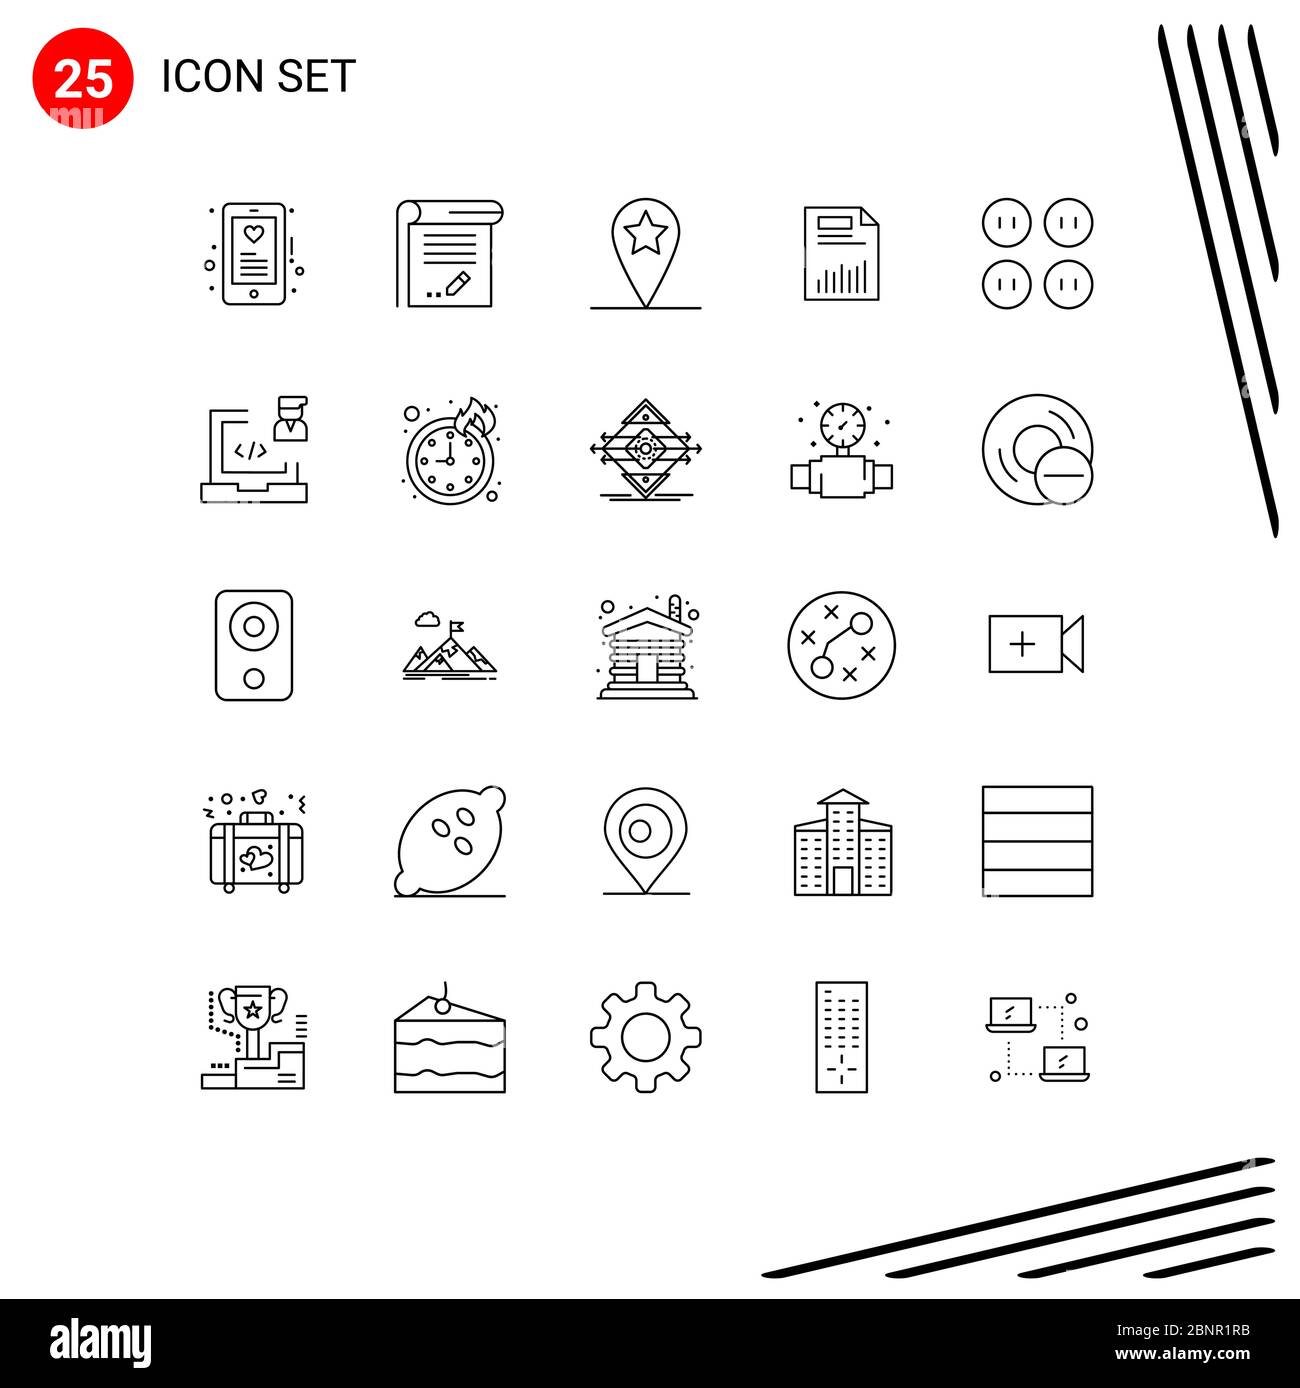 Stock Vektor-Symbol-Pack von 25 Linien Zeichen und Symbole für Papier, Finanzen, Notizbuch, Diagramm, Dokument editierbare Vektor-Design-Elemente Stock Vektor